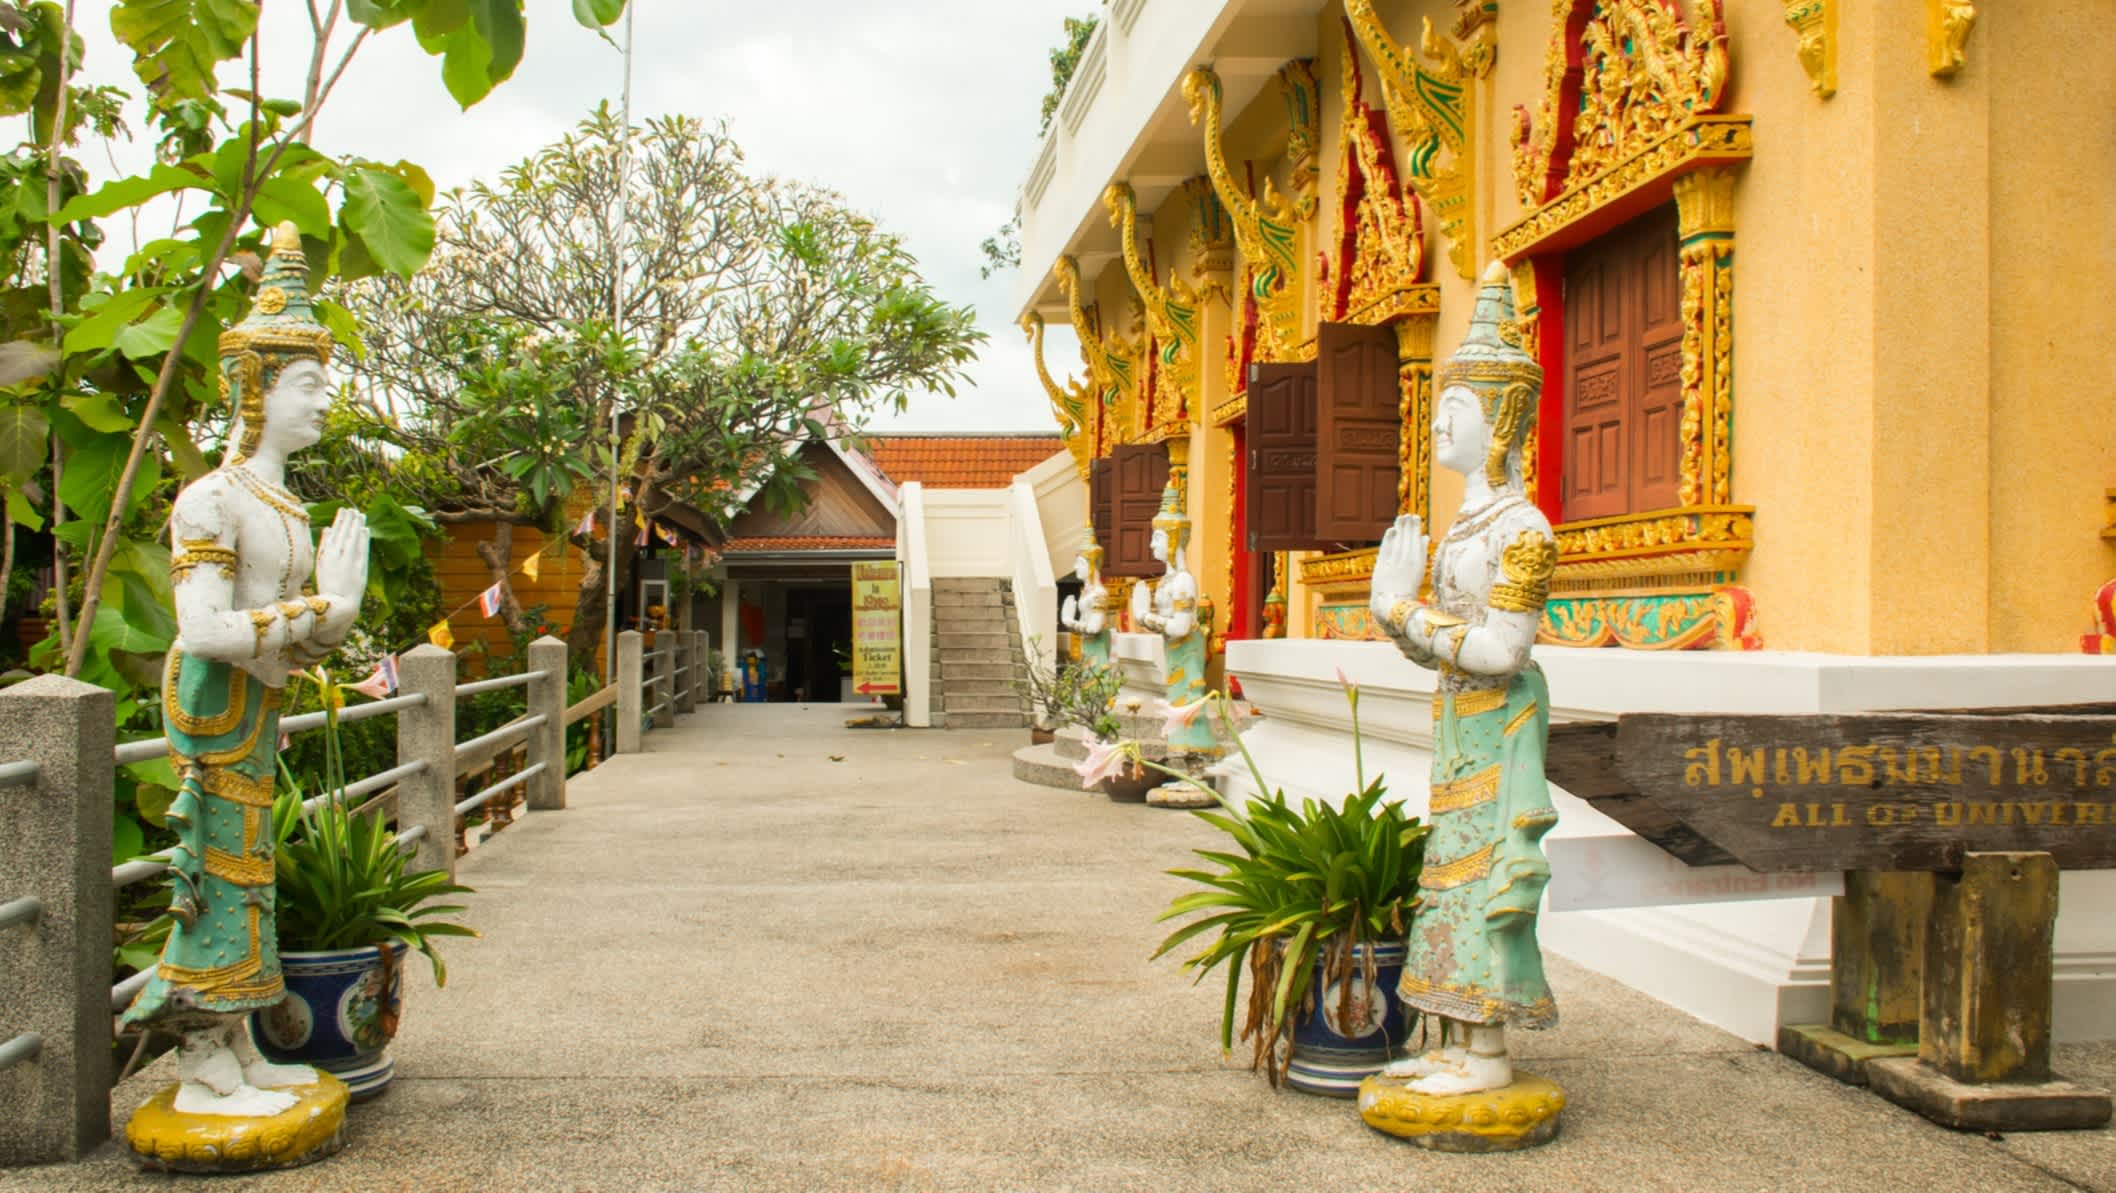 Pagode dorée du Wat Khao Hua Jook sur l'île de Koh Samui en Thaïlande

